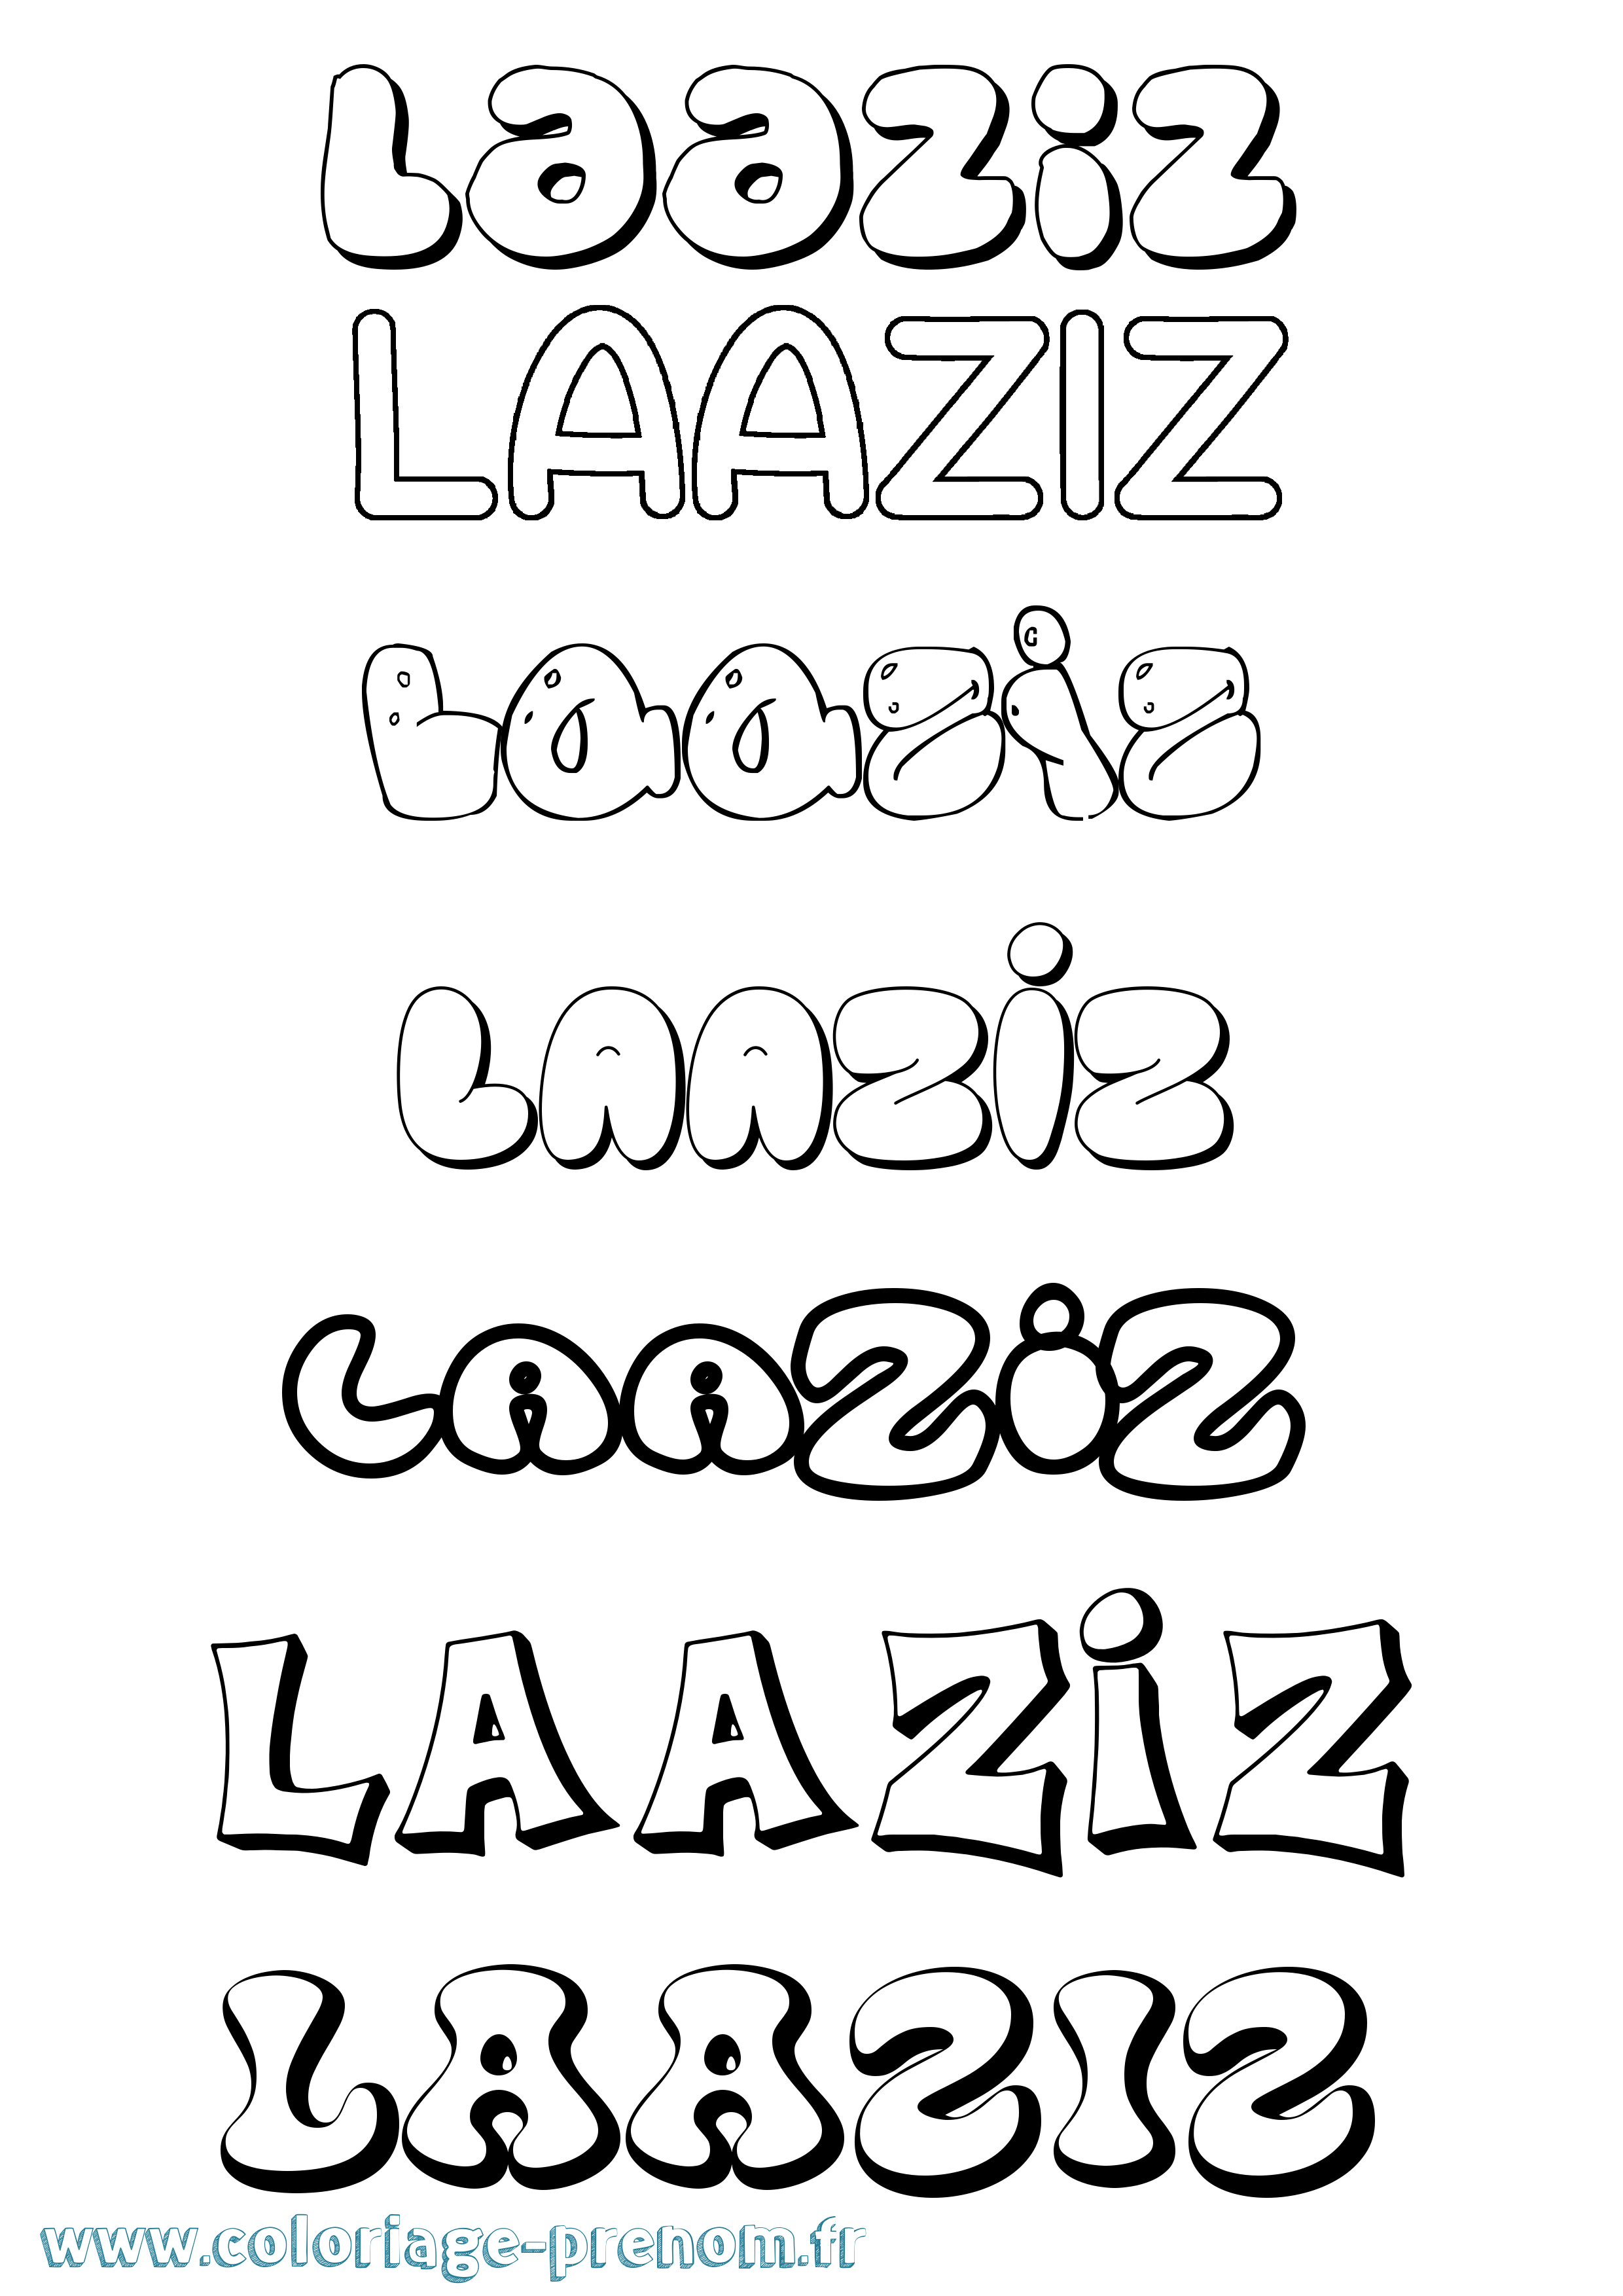 Coloriage prénom Laaziz Bubble